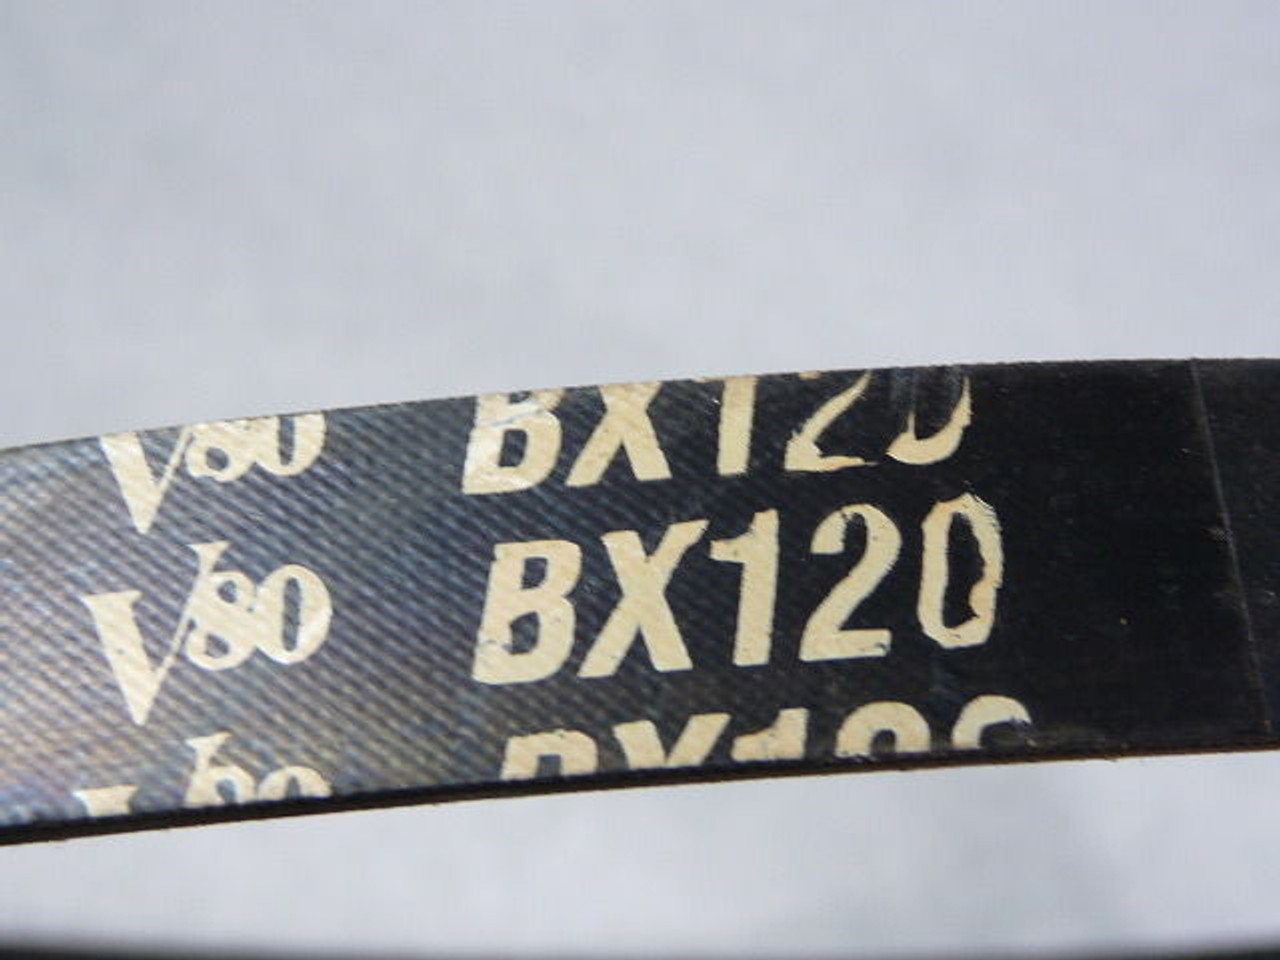 Gates BX120 Notched Oil/Heat Resistant V-Belt 123" ! NOP !